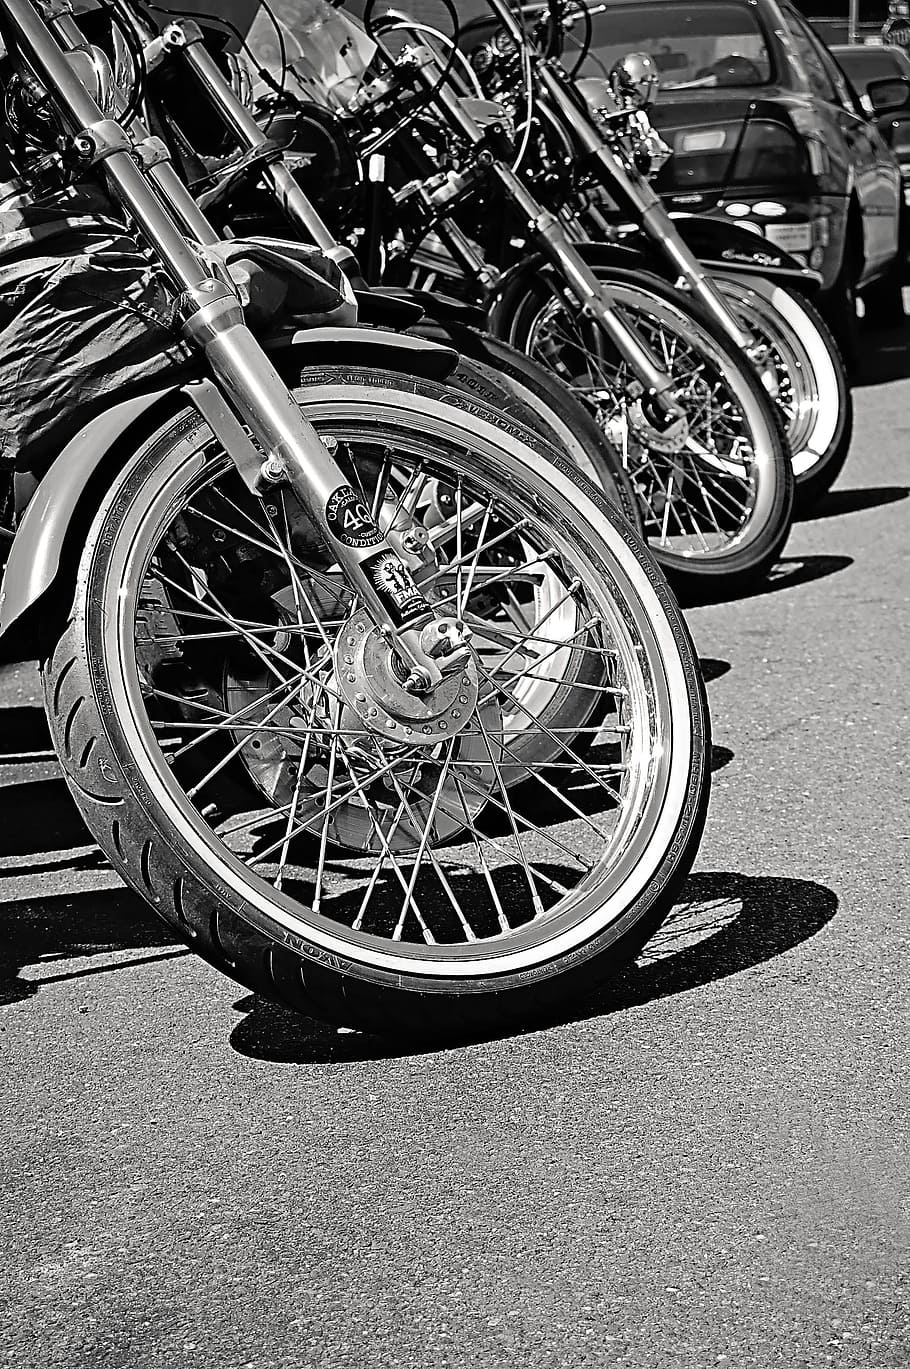 hitam dan putih, baris, sepeda motor, transportasi, perjalanan, sepeda, babi, vintage, tua, roda